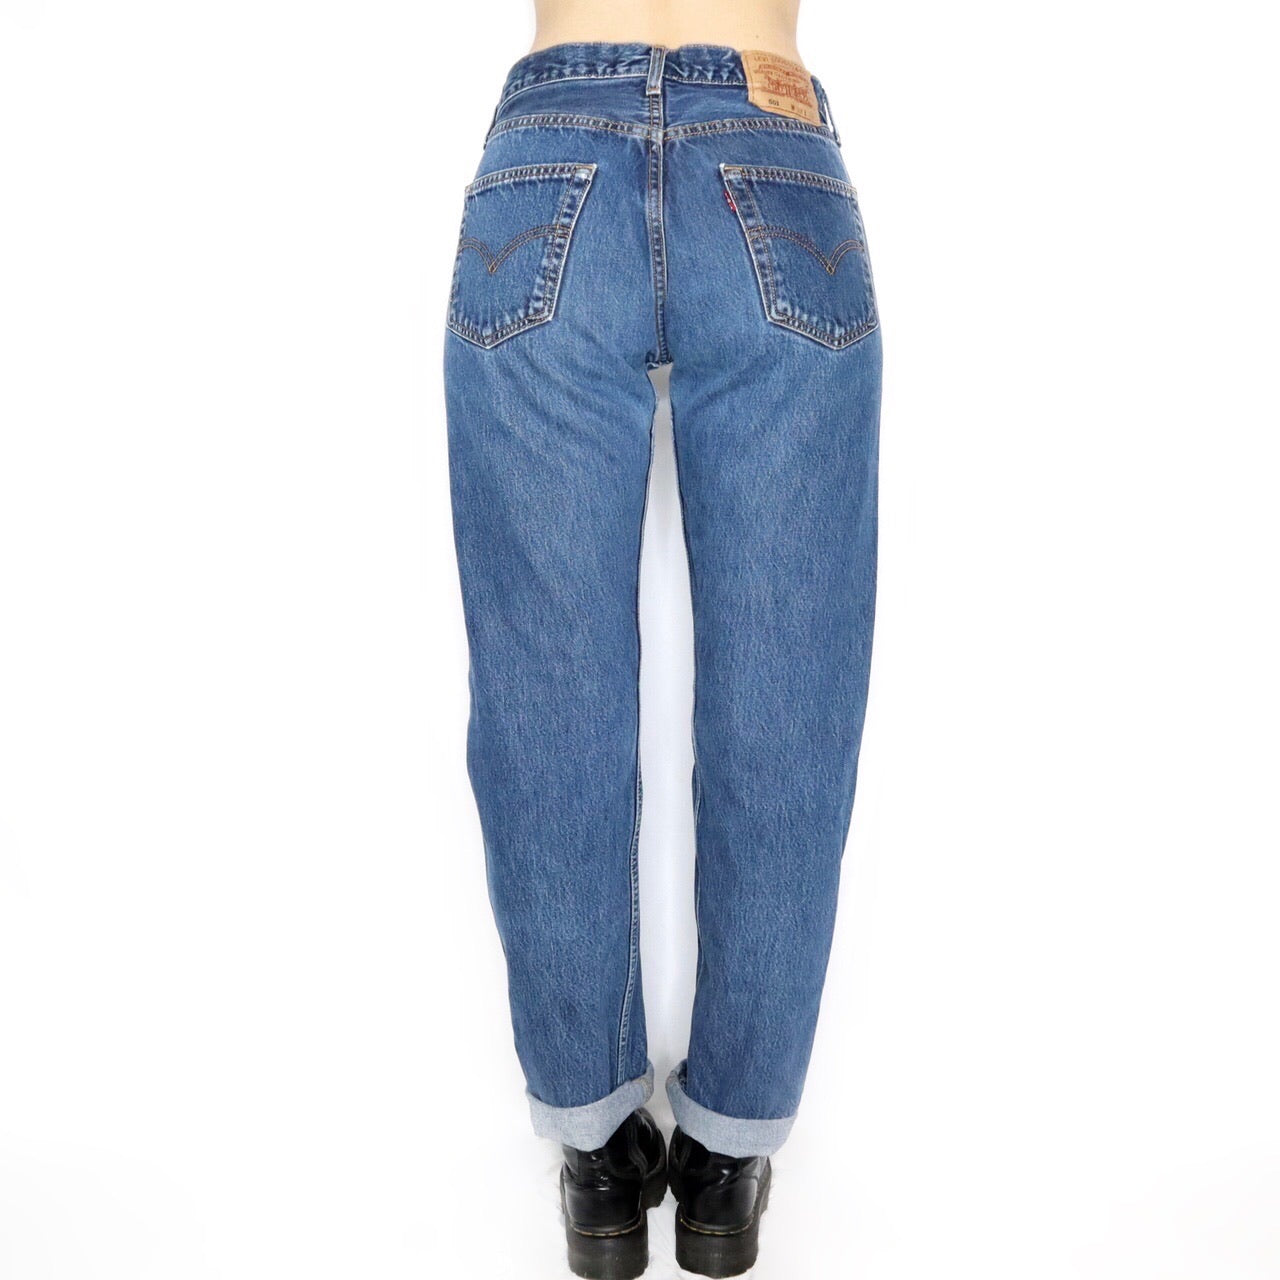 Vintage 90s Medium Blue Wash 501 Levis Jeans